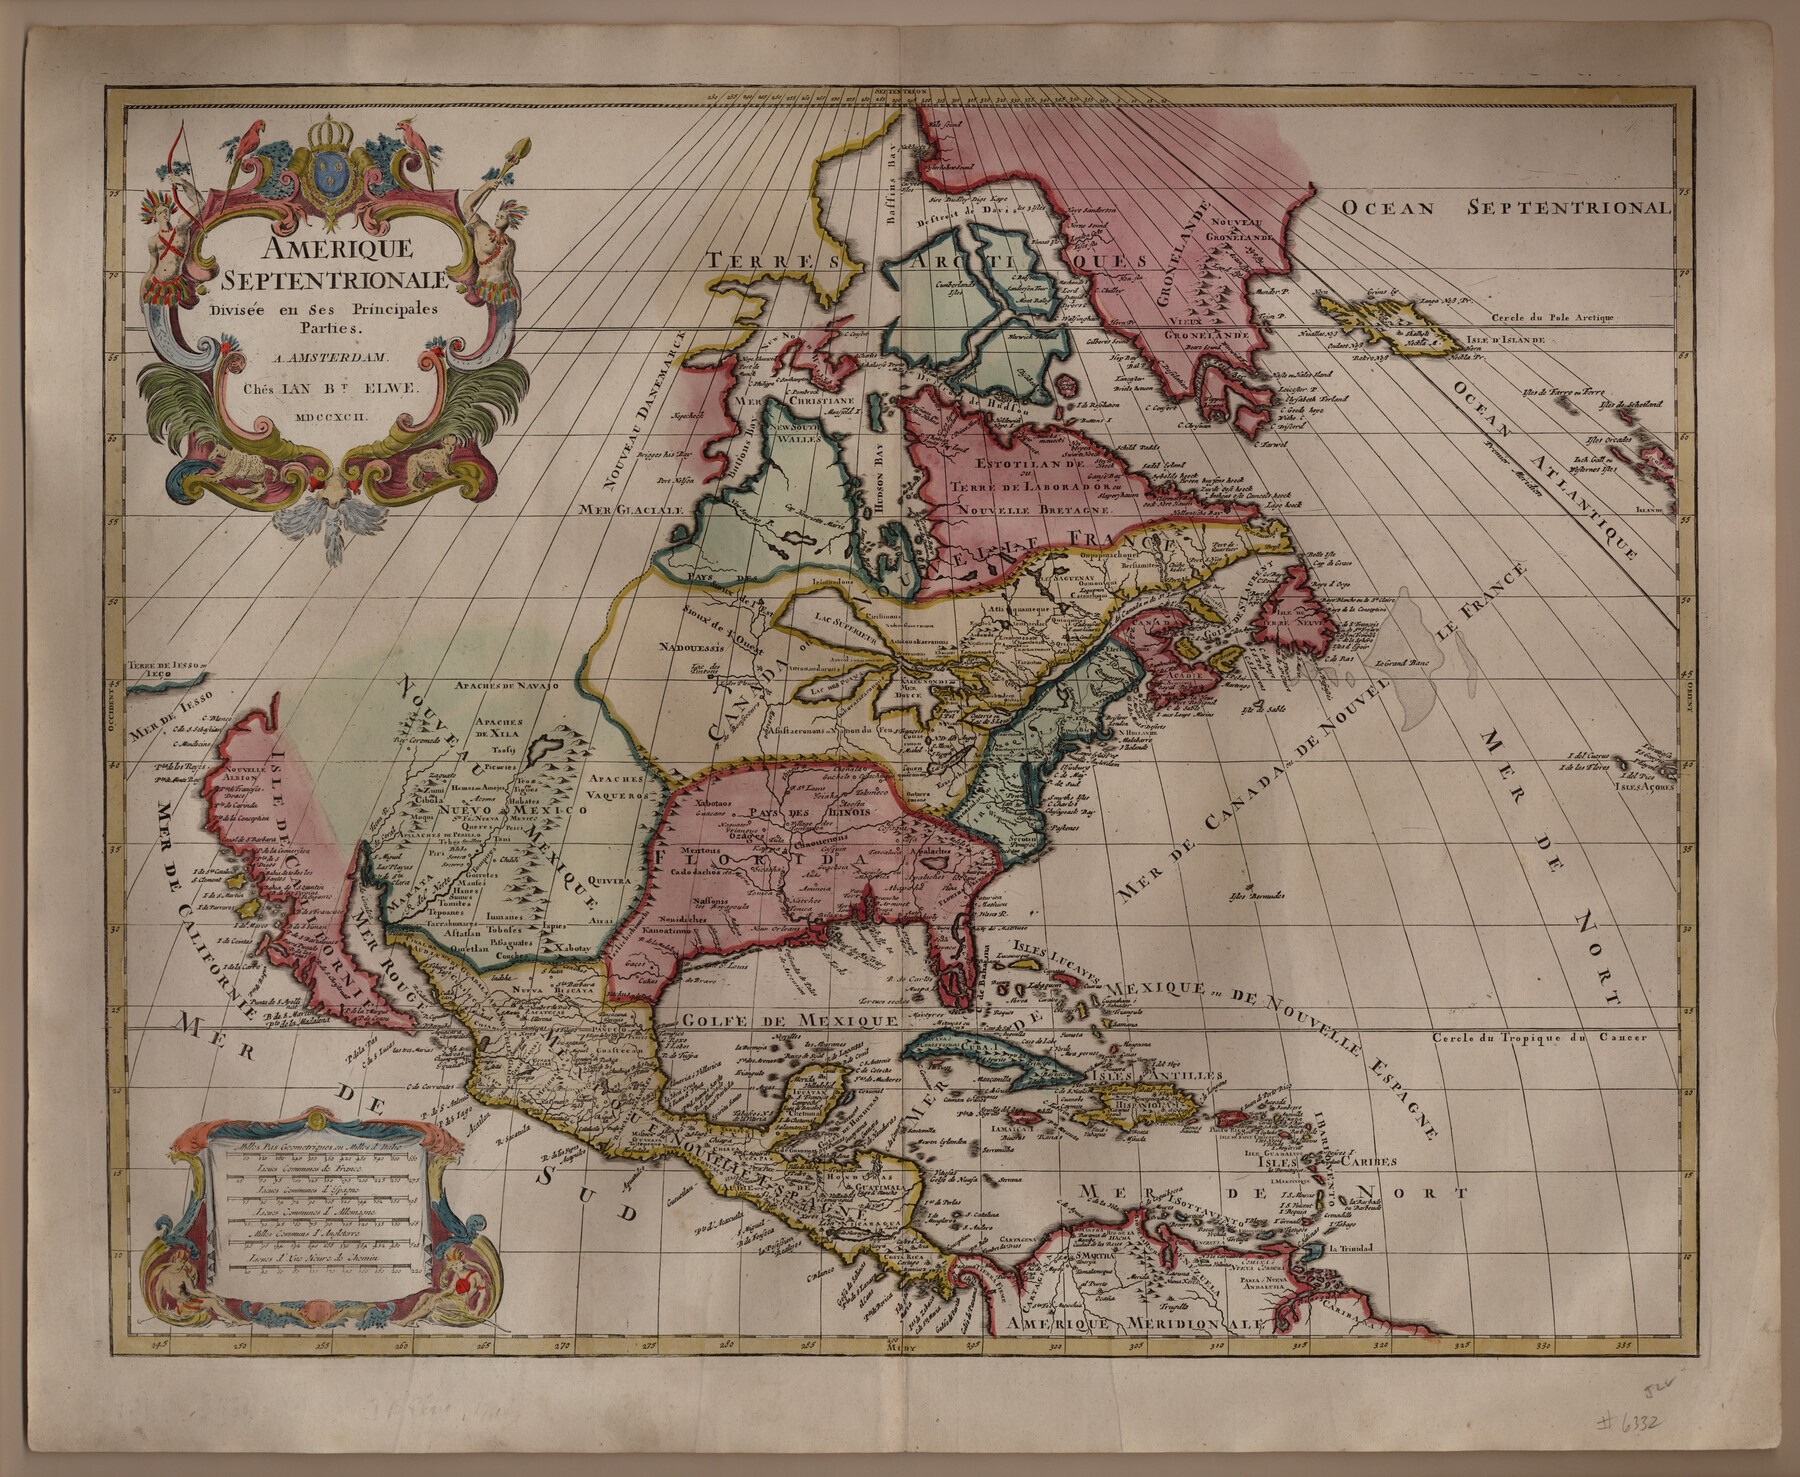 93916, Amerique Septentrionale divisée en ses principales parties, Holcomb Digital Map Collection